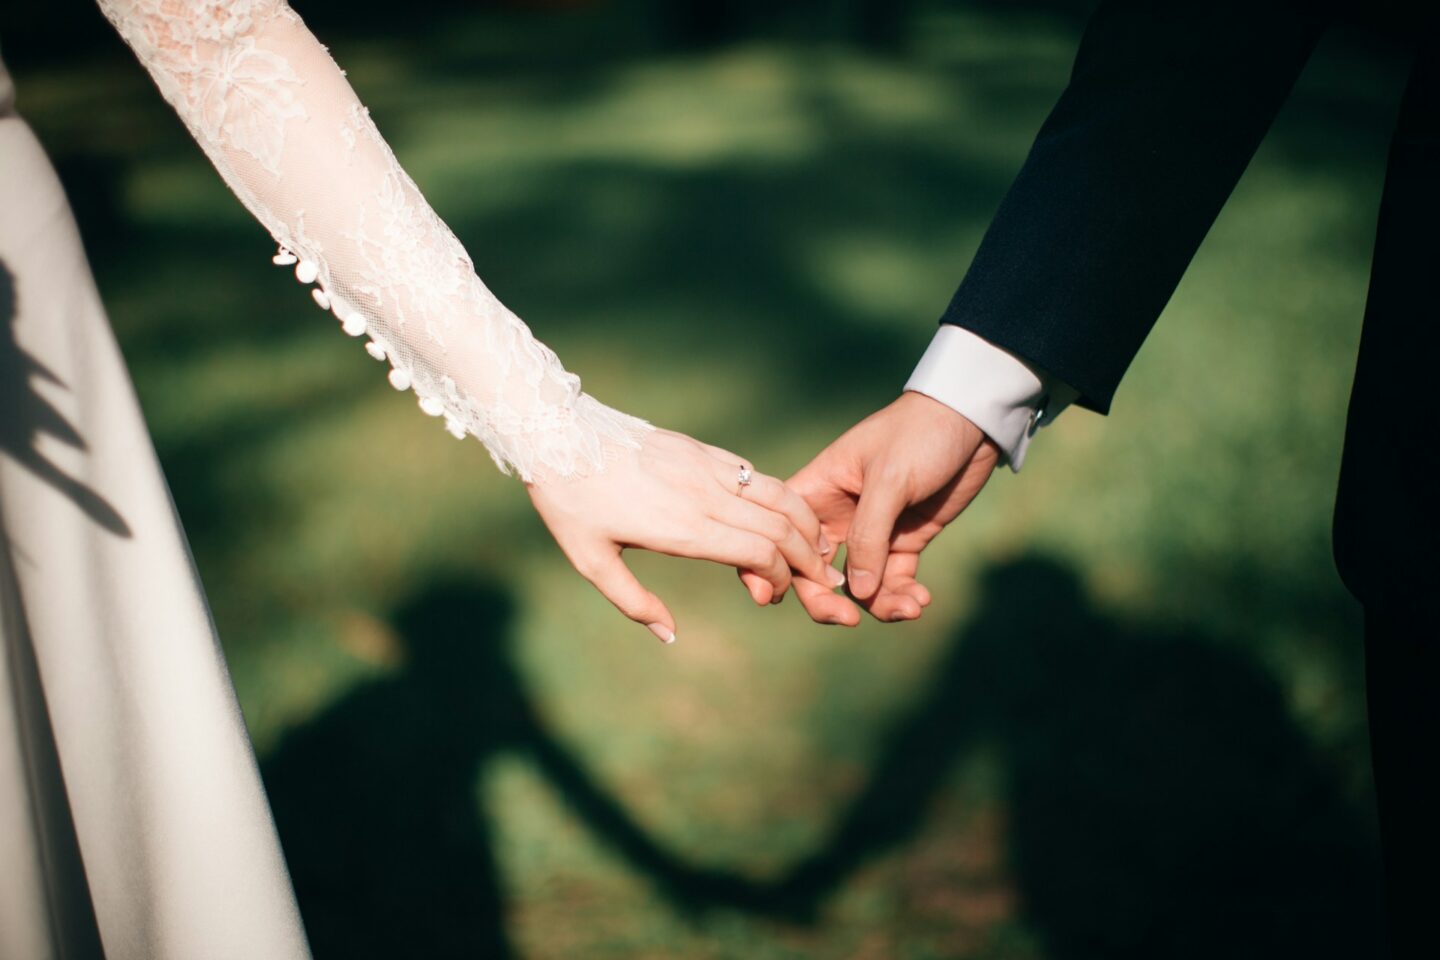 bride groom holding hands